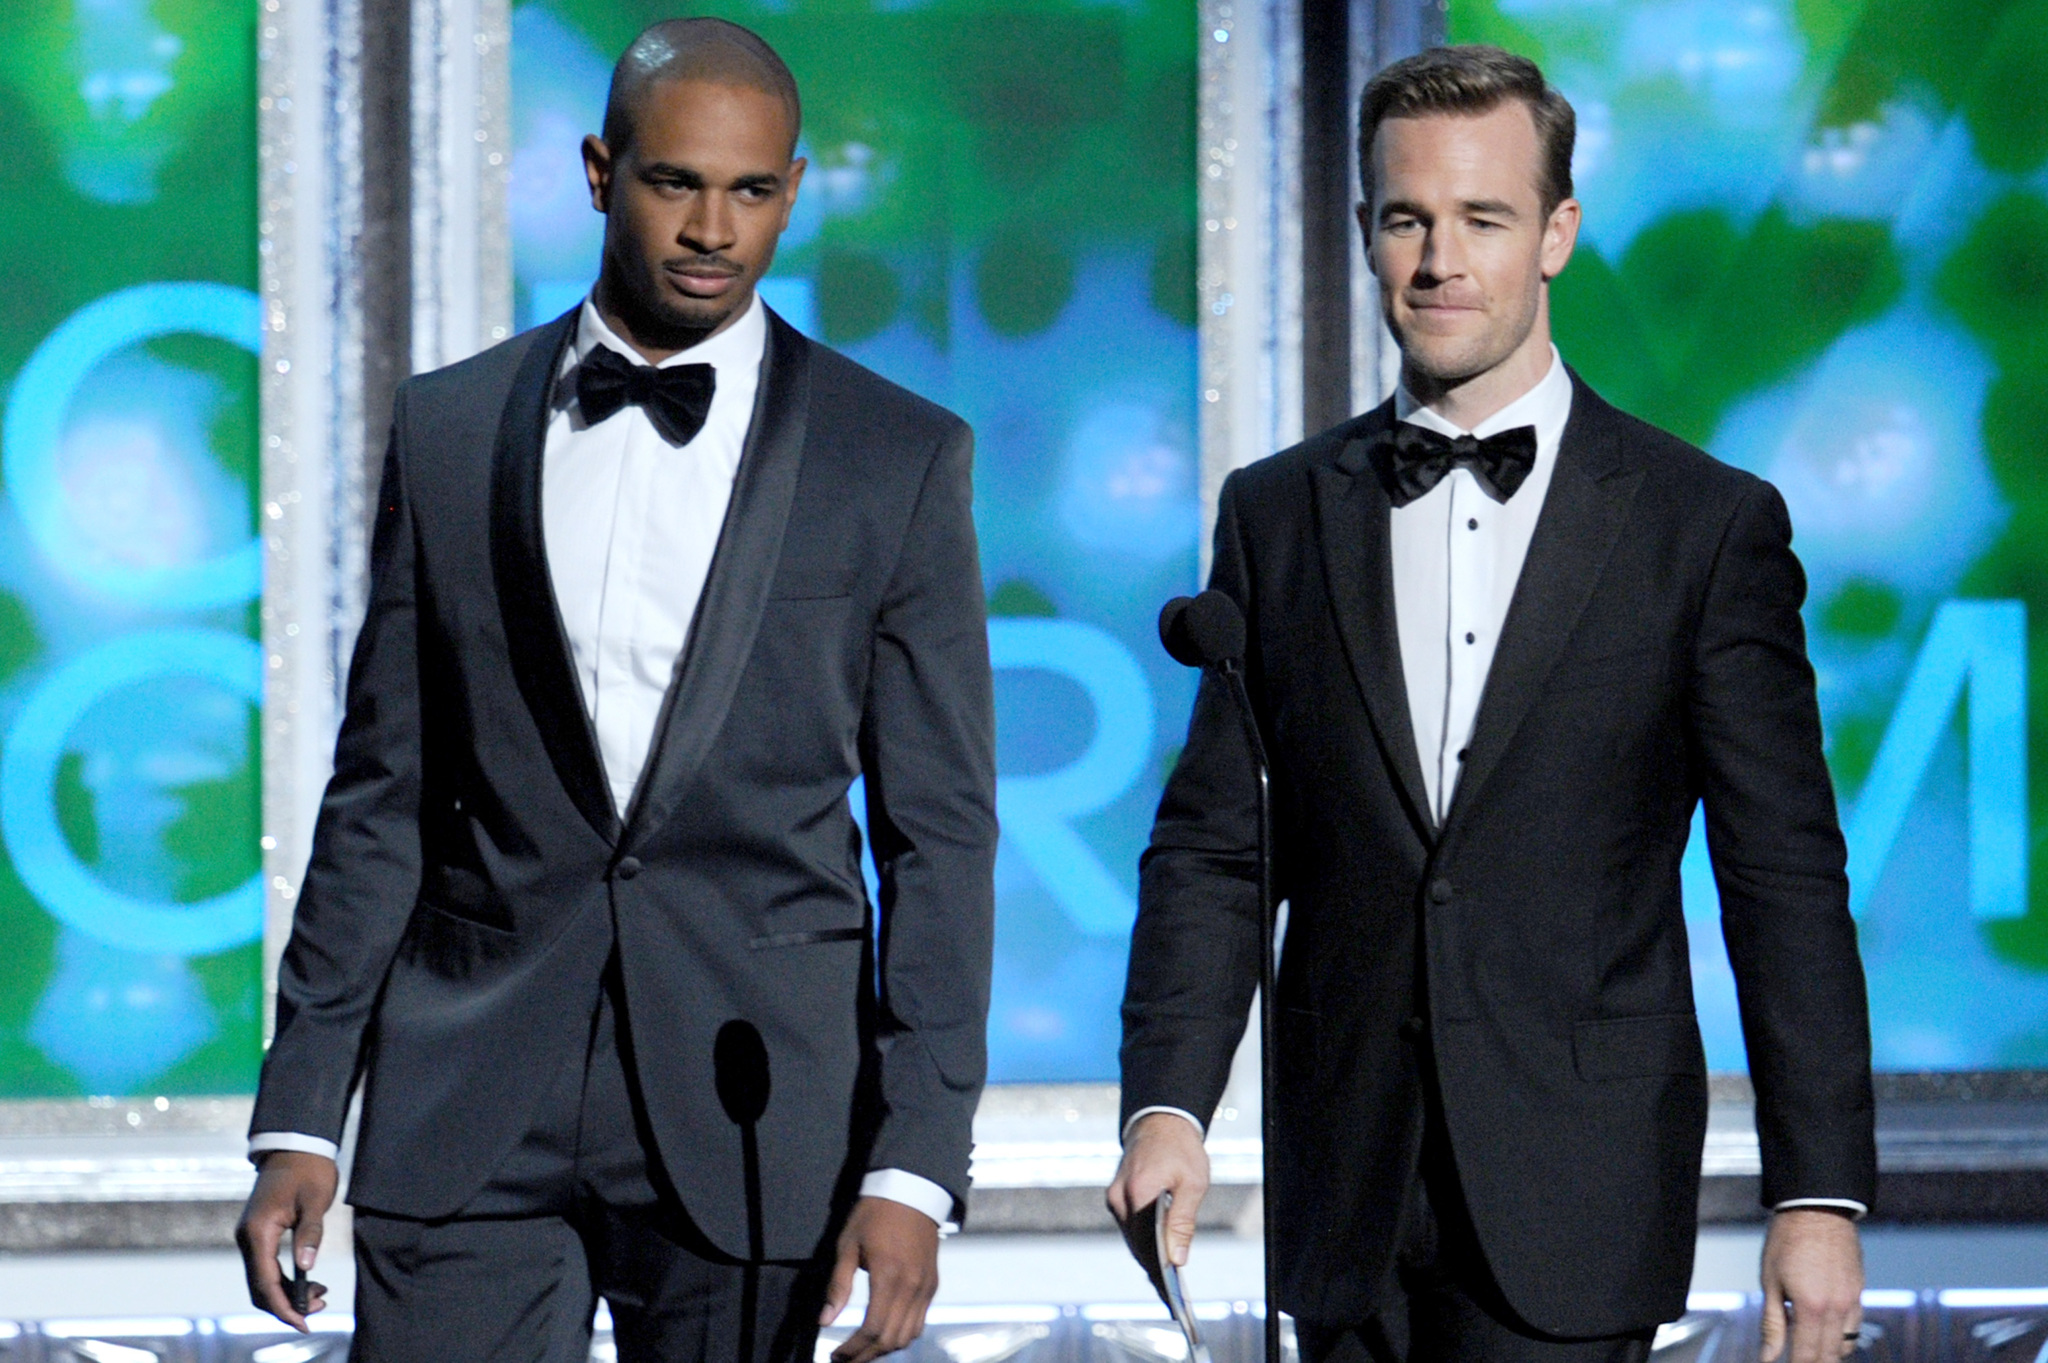 James Van Der Beek and Damon Wayans Jr. at event of The 64th Primetime Emmy Awards (2012)